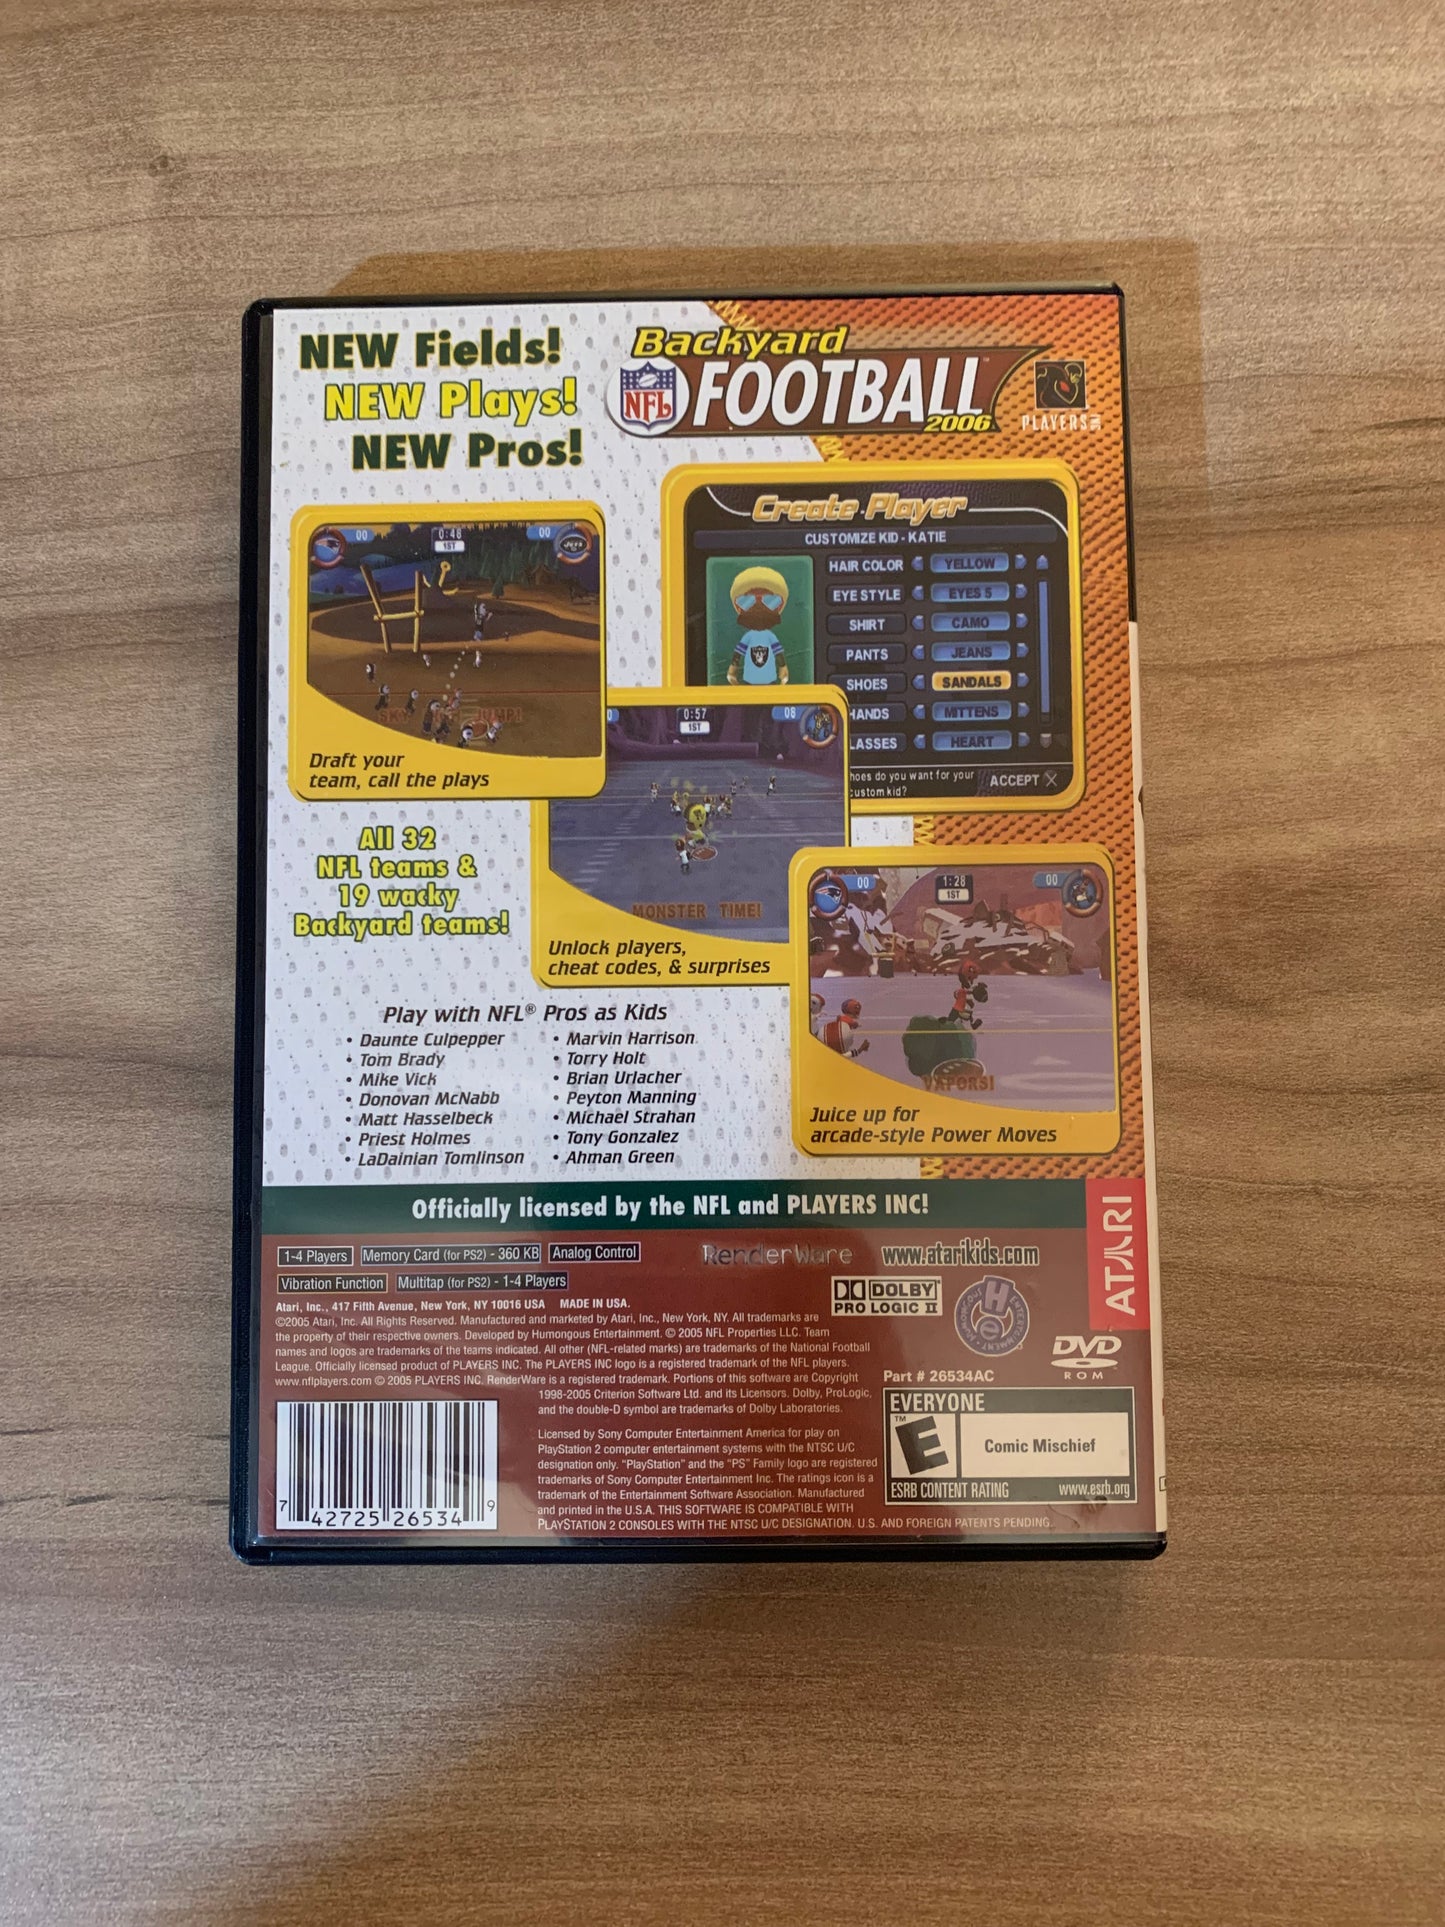 SONY PLAYSTATiON 2 [PS2] | BACKYARD NFL FOOTBALL 2006